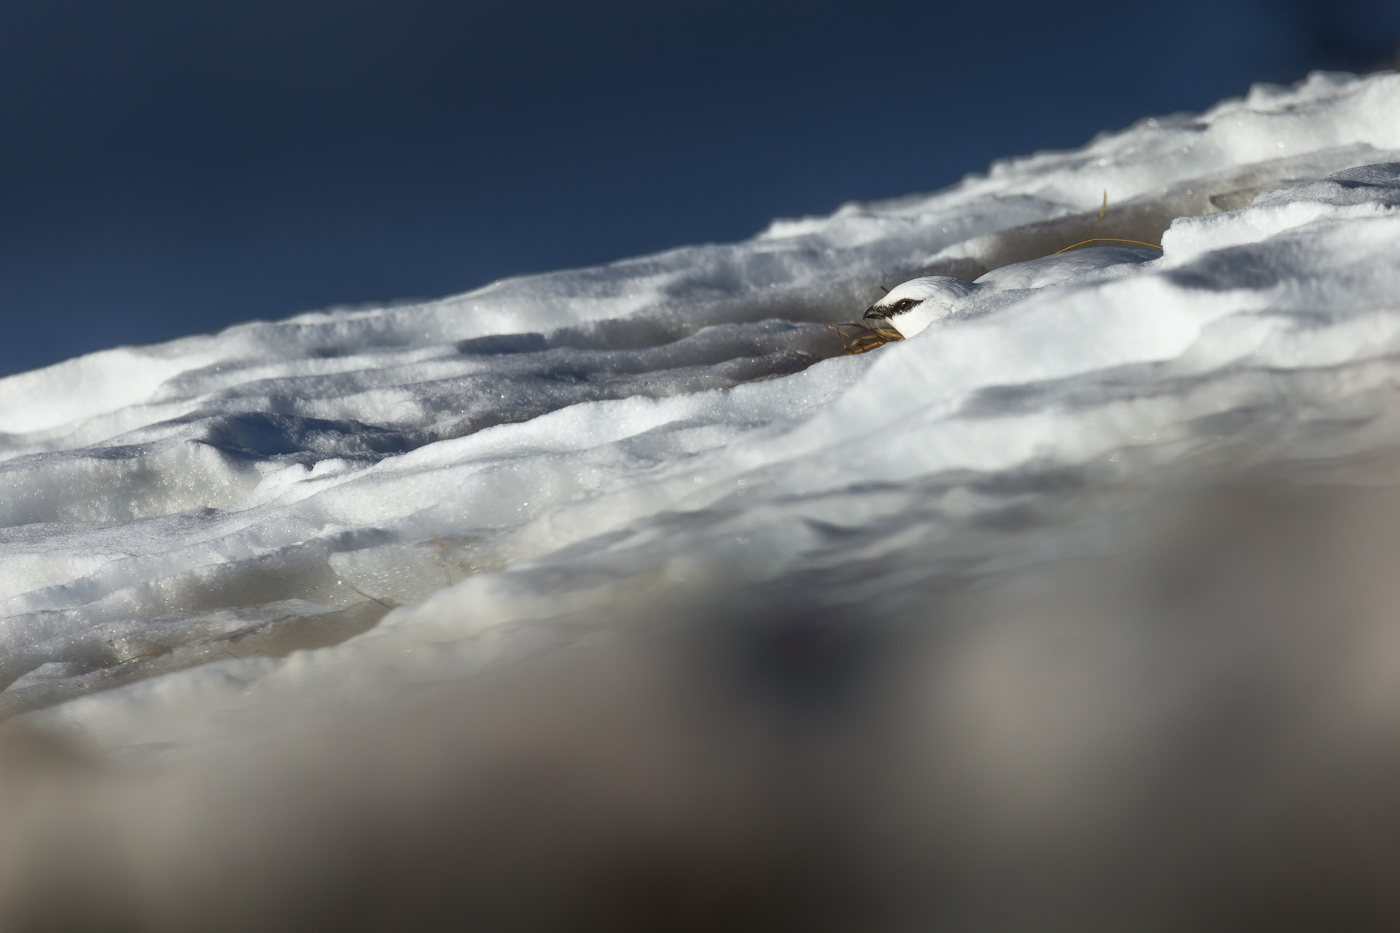 Abilità e adattamento. Il talento mimetico della pernice bianca (Lagopus muta) in veste invernale. Parco Naturale Tre Cime, Dolomiti di Sesto, Italia.